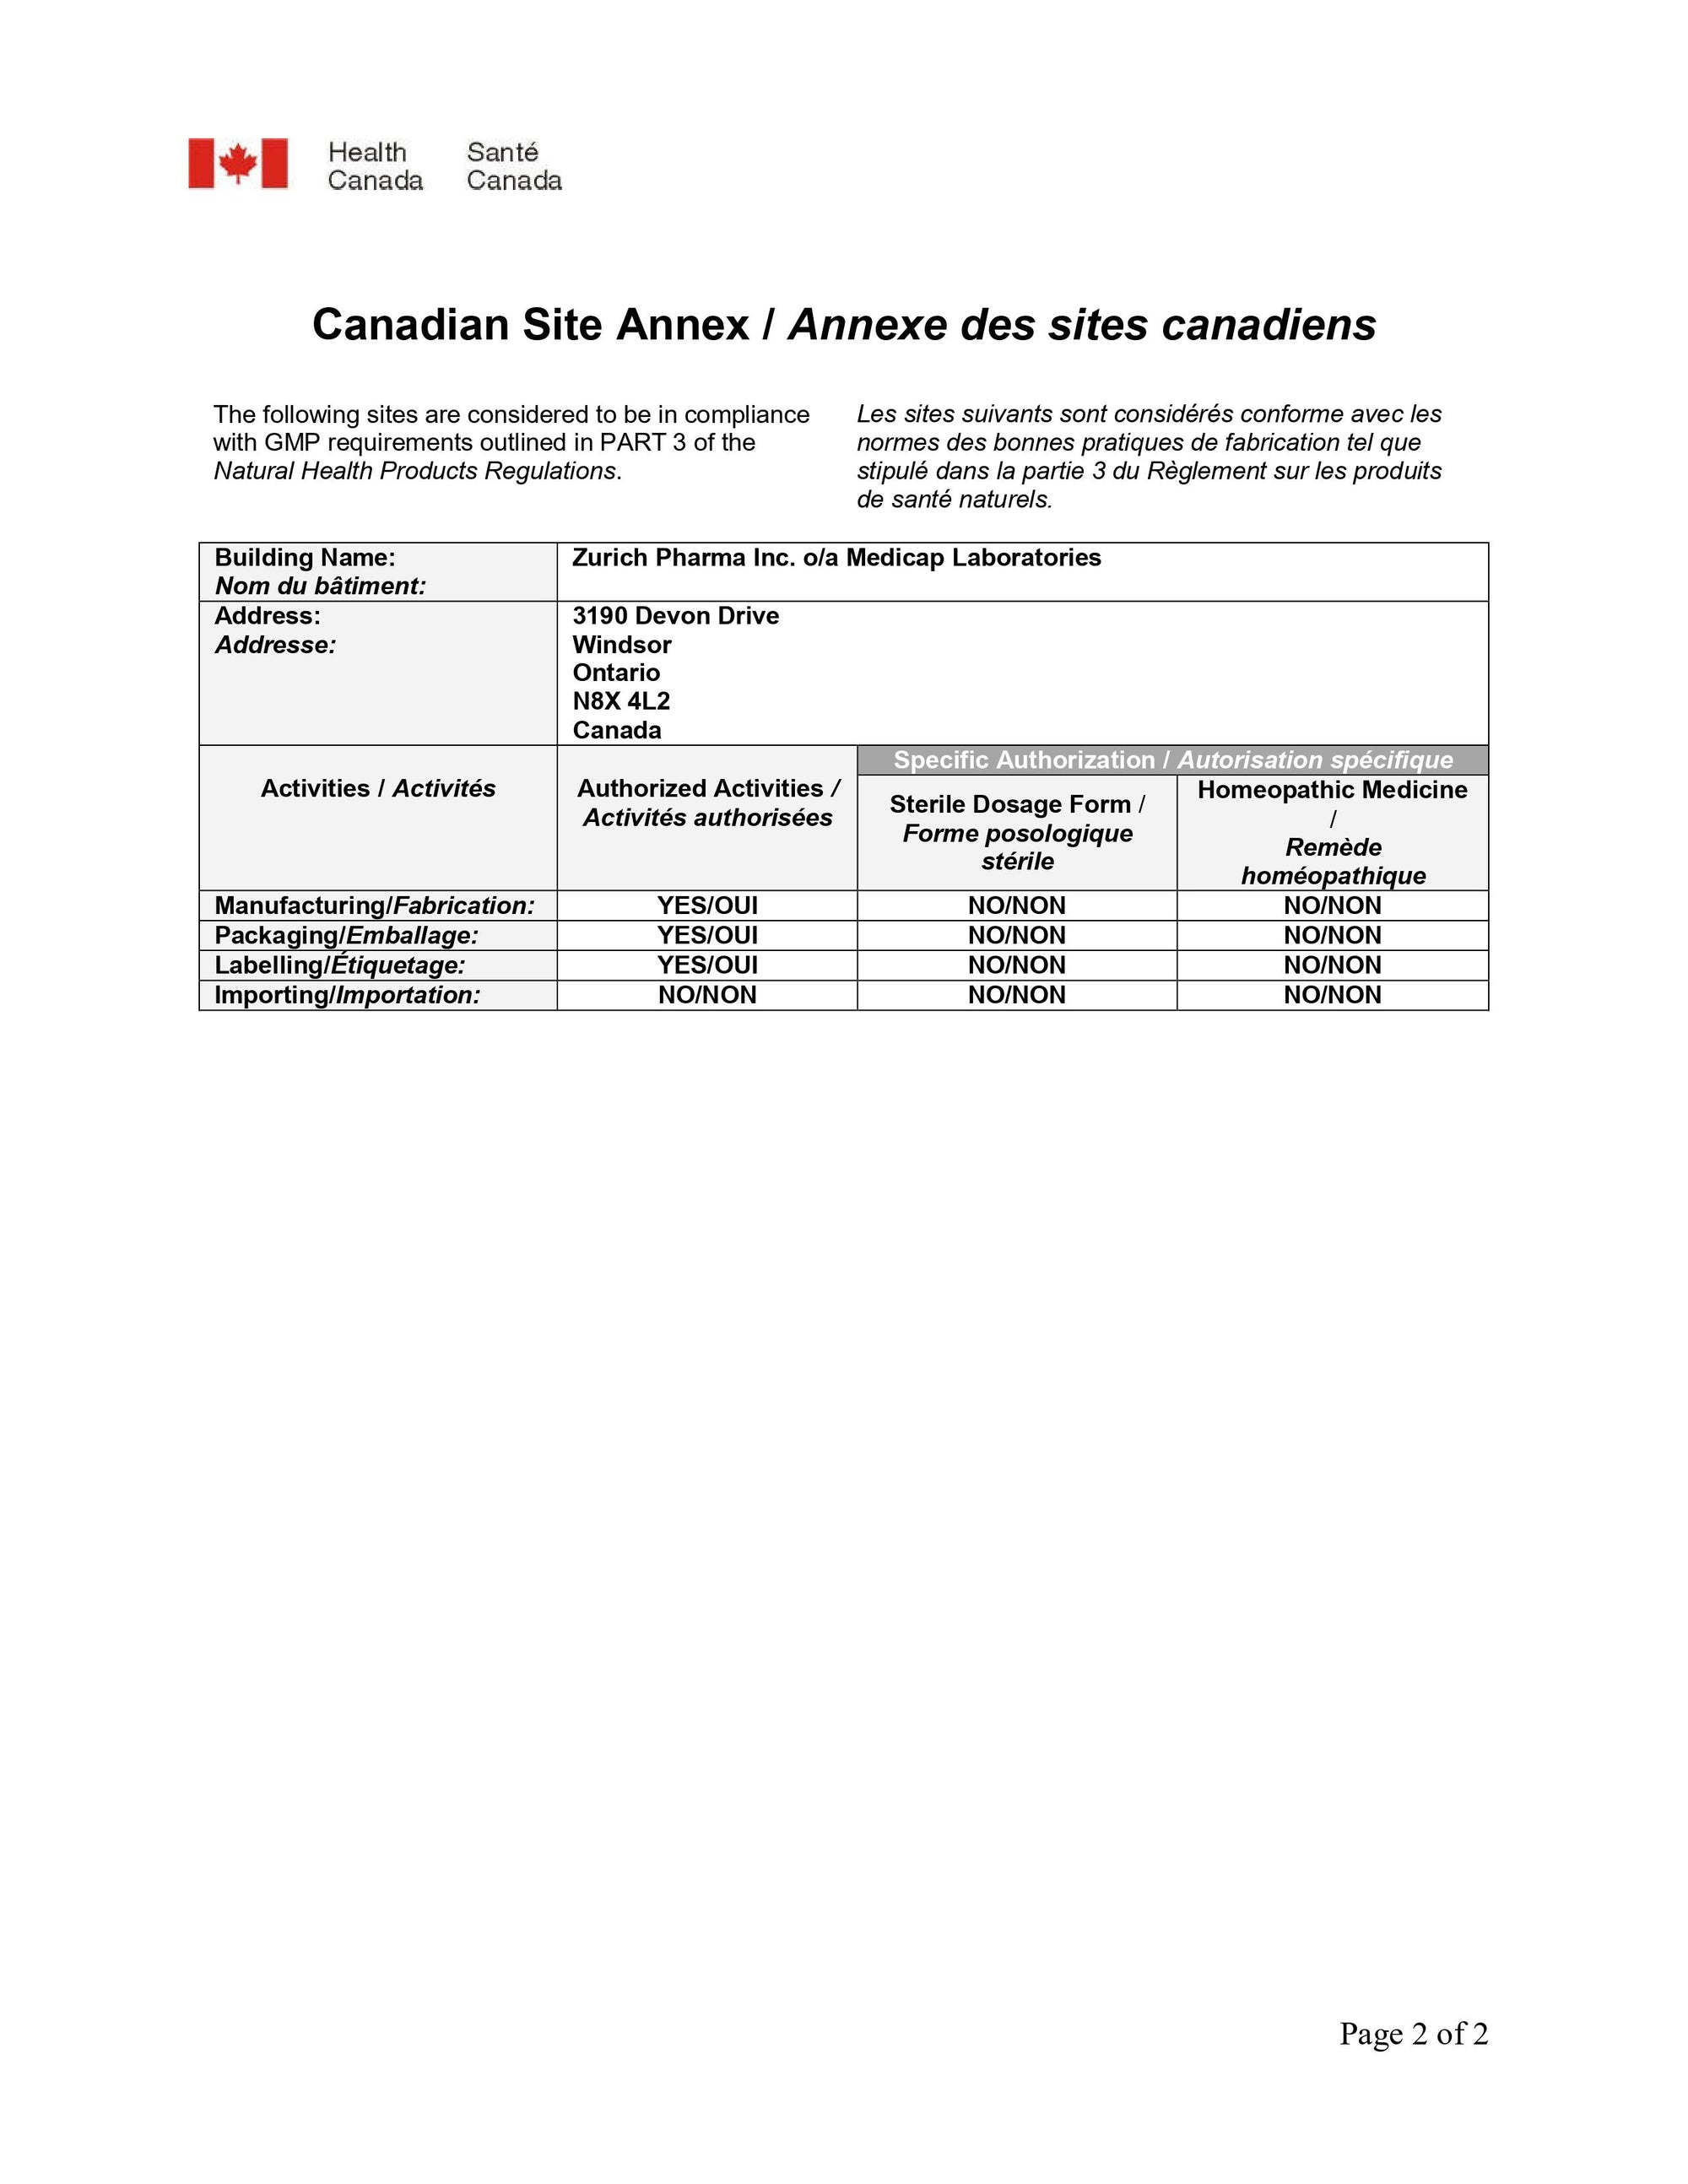 Canadian Site Annex for medicap laboratories